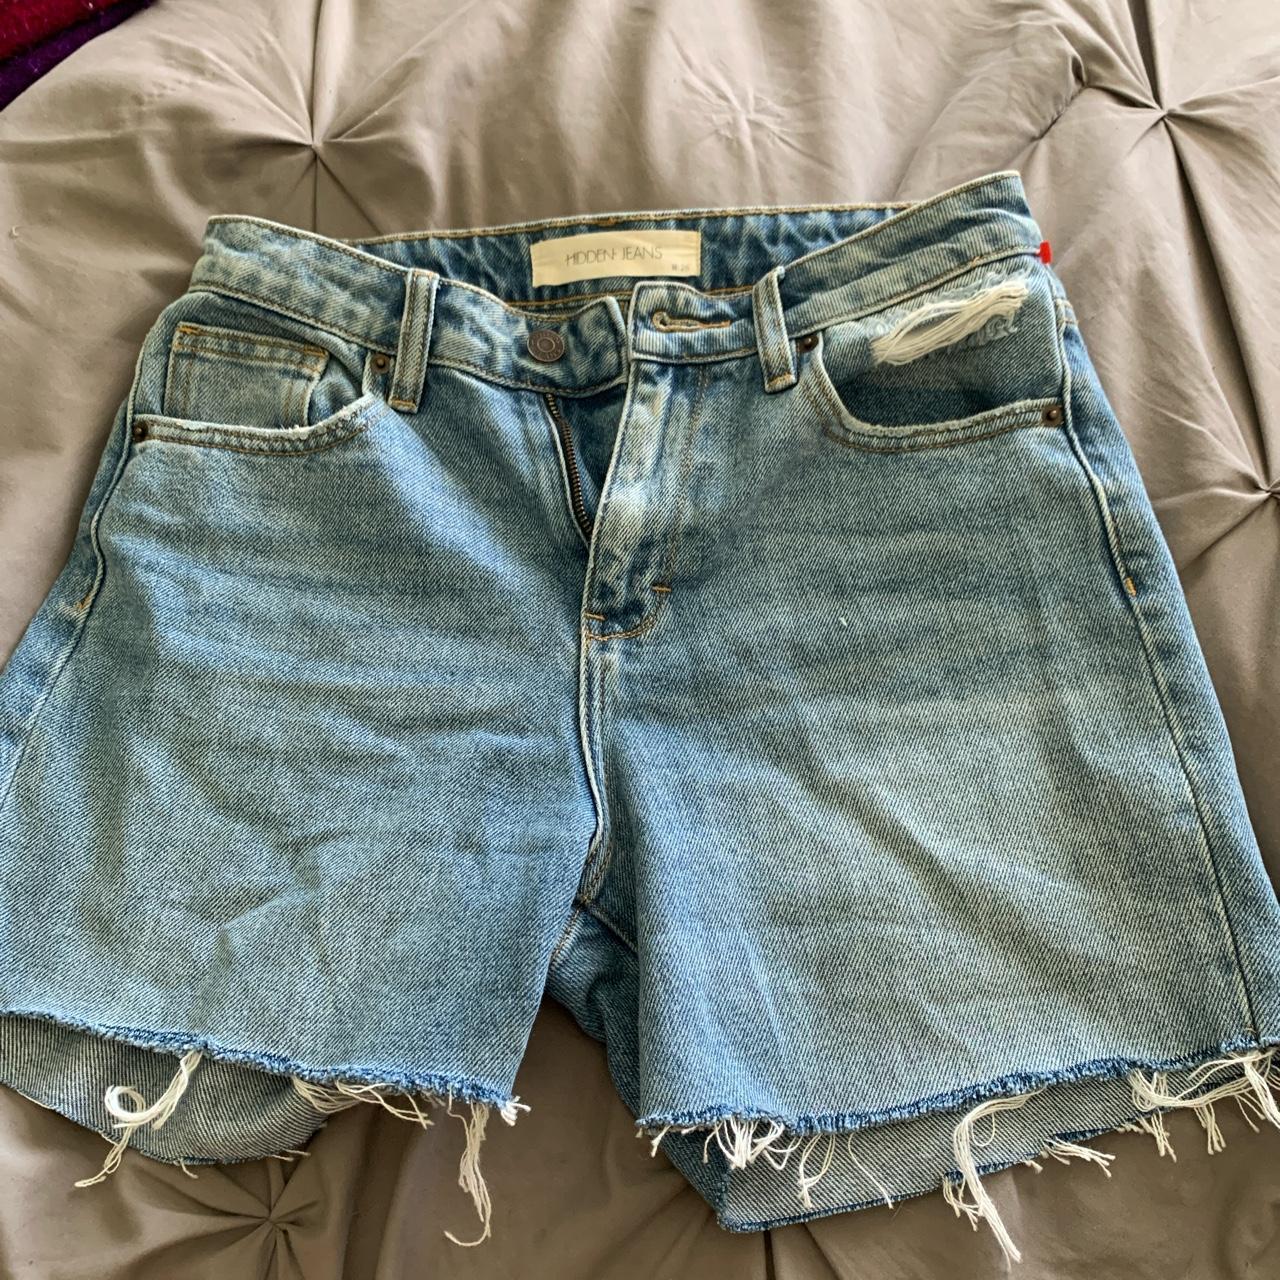 Hidden Jean shorts size w 26 - Depop